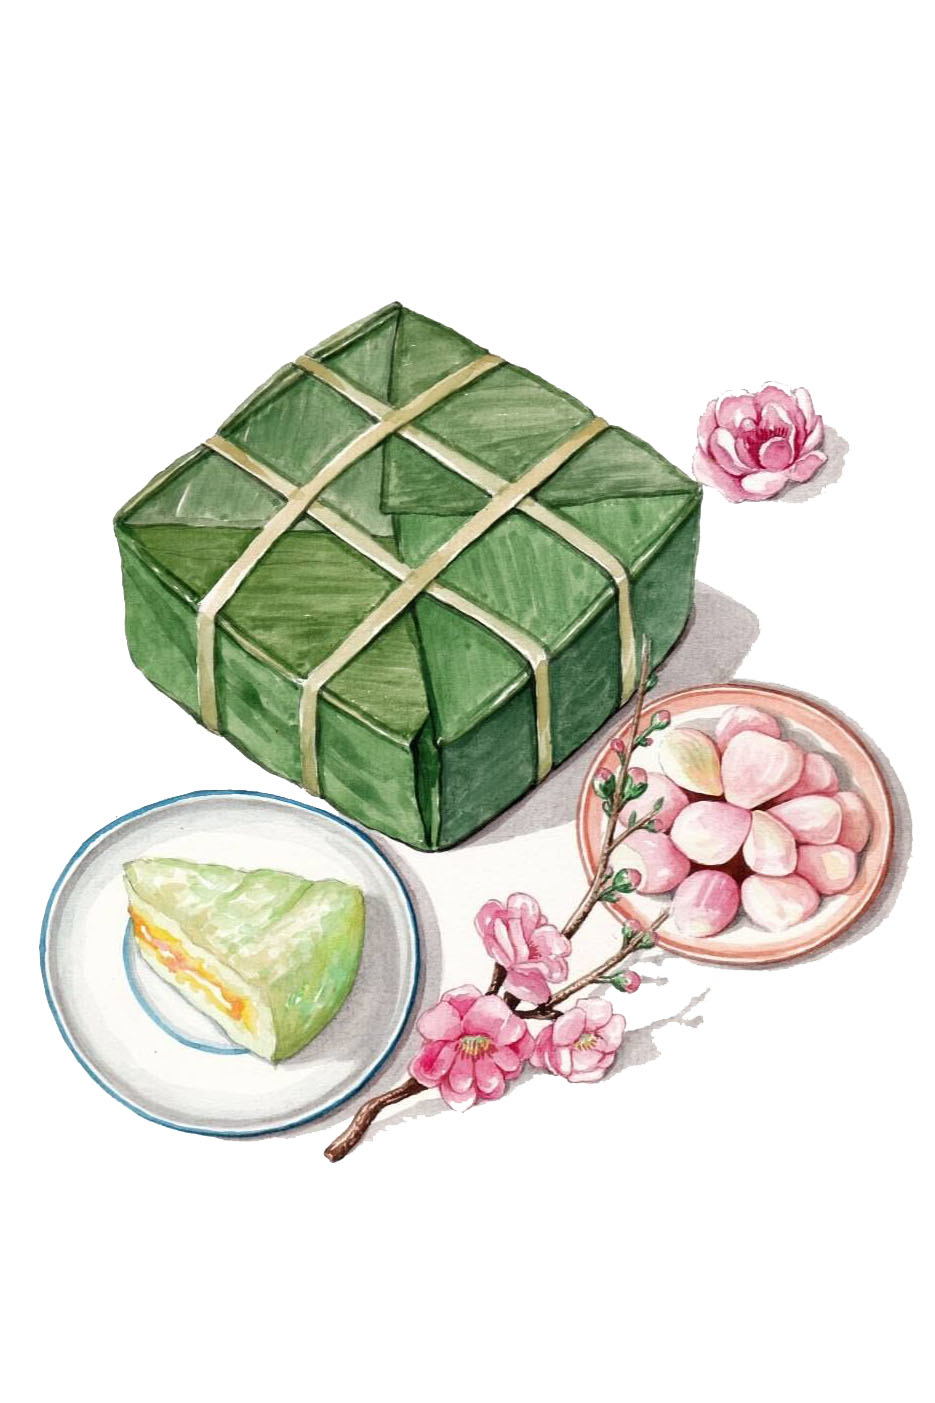 Tranh vẽ bánh chưng tuyệt đẹp đã thể hiện nét đẹp truyền thống của bữa ăn Tết Việt Nam. Tranh có độ sắc nét cao, tạo cảm giác như mình đang tham gia vào một buổi tiệc Tết truyền thống. Hãy cùng xem để hiểu thêm về giá trị và ý nghĩa của hạt nếp, đậu xanh và thịt heo trong chiếc bánh chưng nhé!